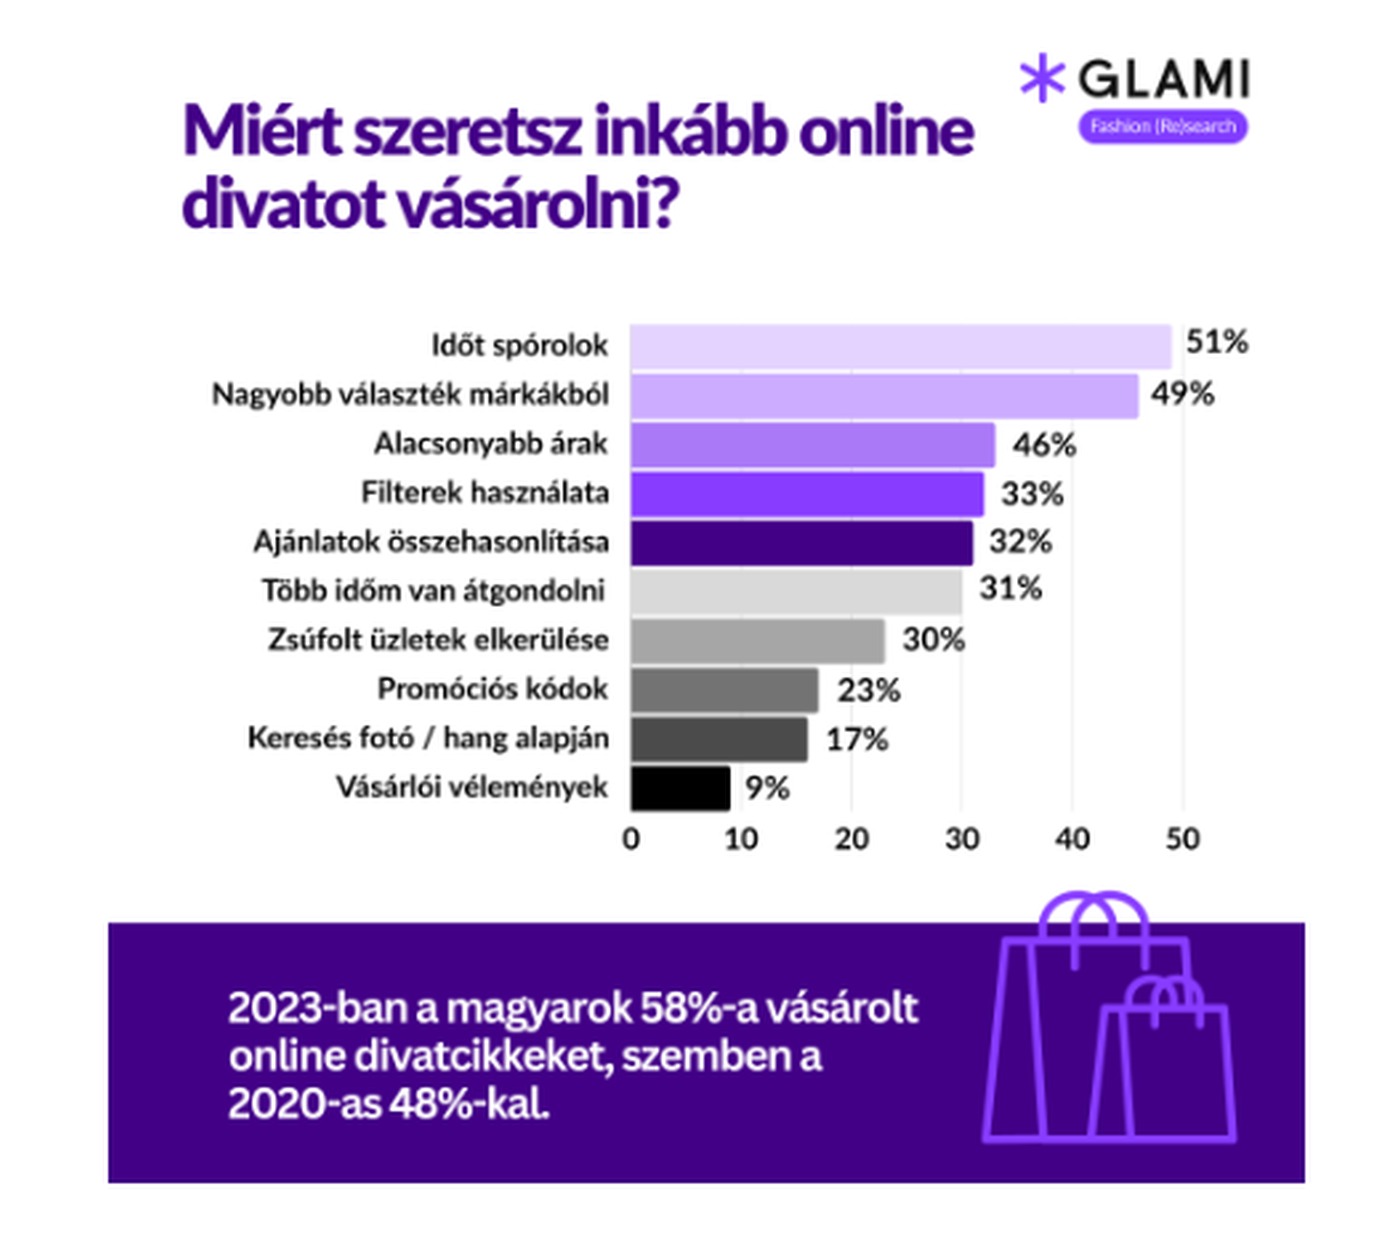 Miért szeretsz inkább online divatot vásárolni? forrás: GLAMI